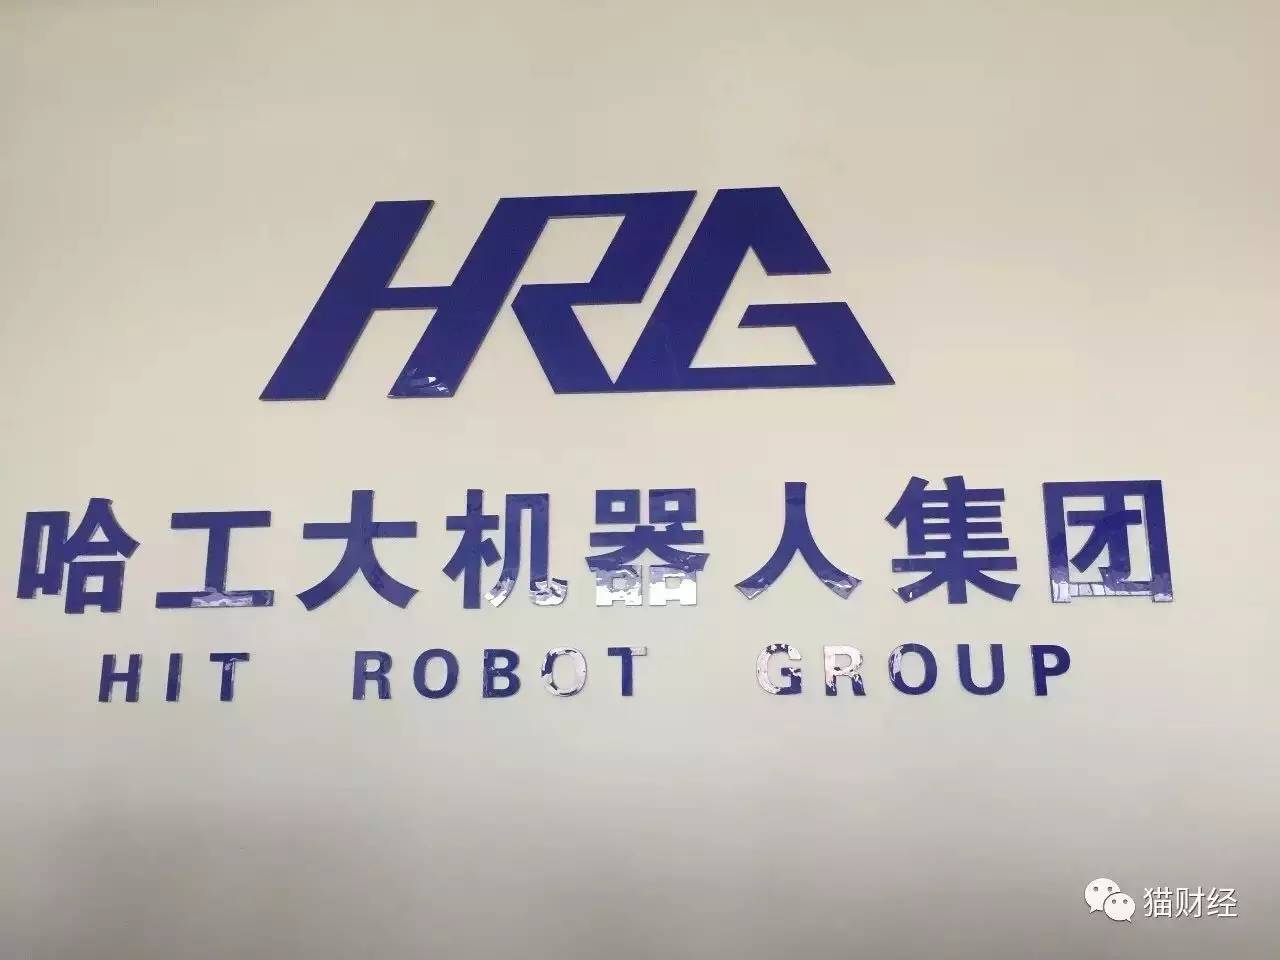 第三站:哈工大机器人集团(hrg)